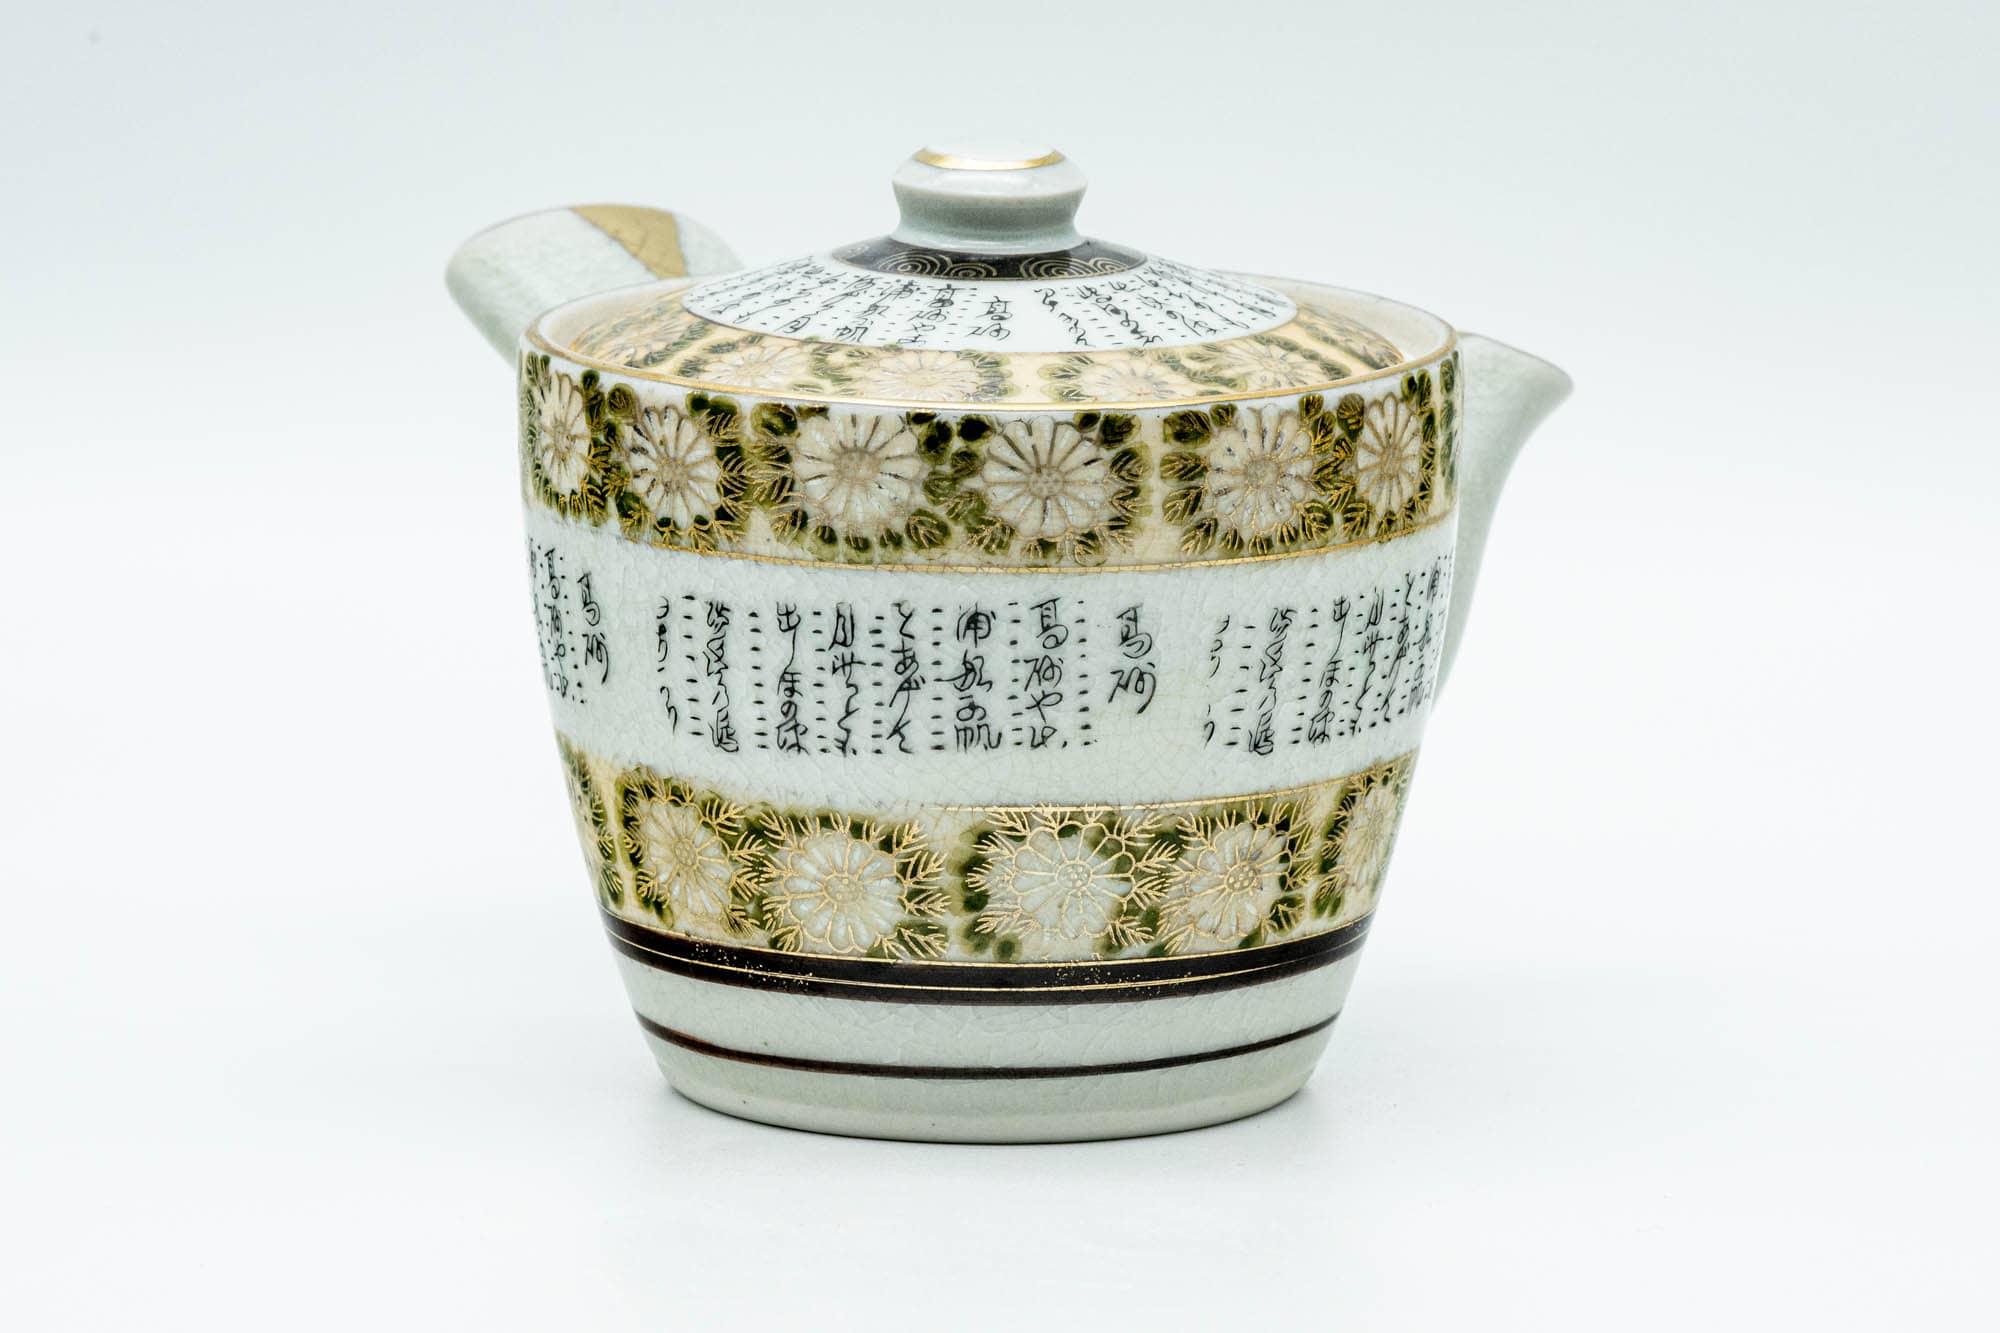 Japanese Tea Set - Gold White Chrysanthemum Kutani-yaki Kyusu Teapot with 2 Yunomi Teacups